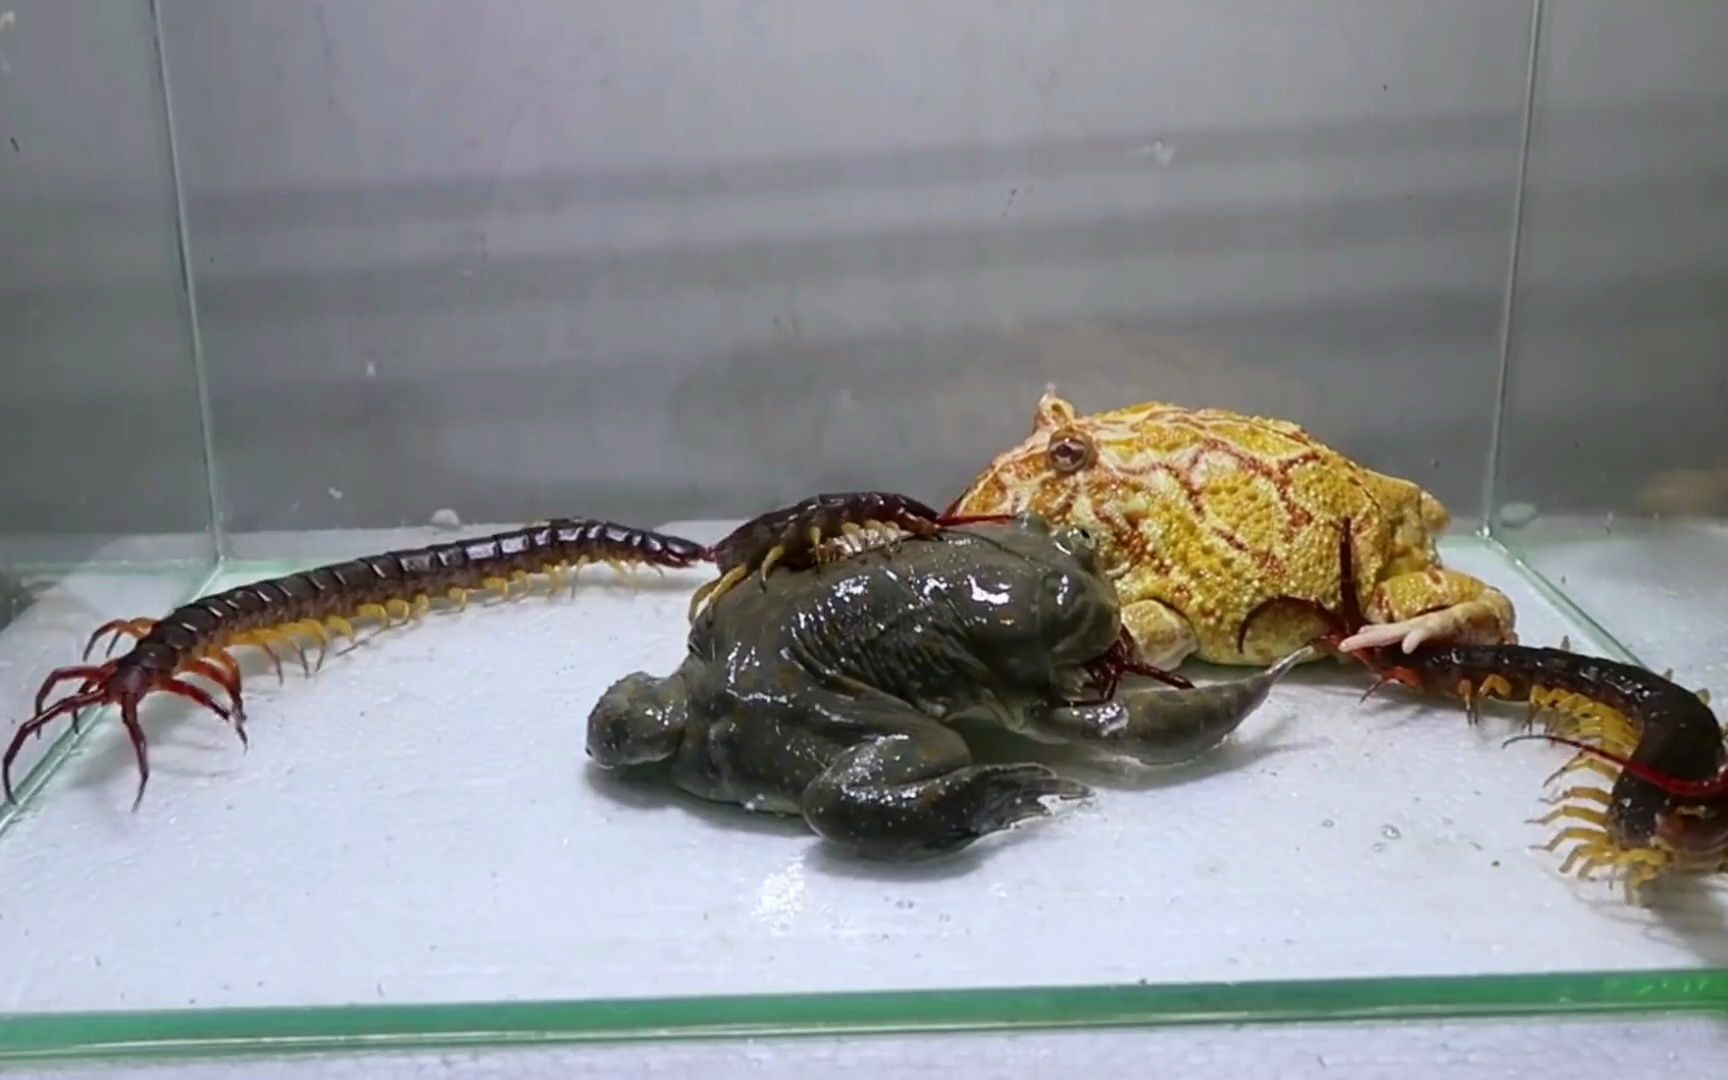 动物生死决斗:3条巨人蜈蚣大战角蛙和小丑蛙,你认为谁会赢呢?